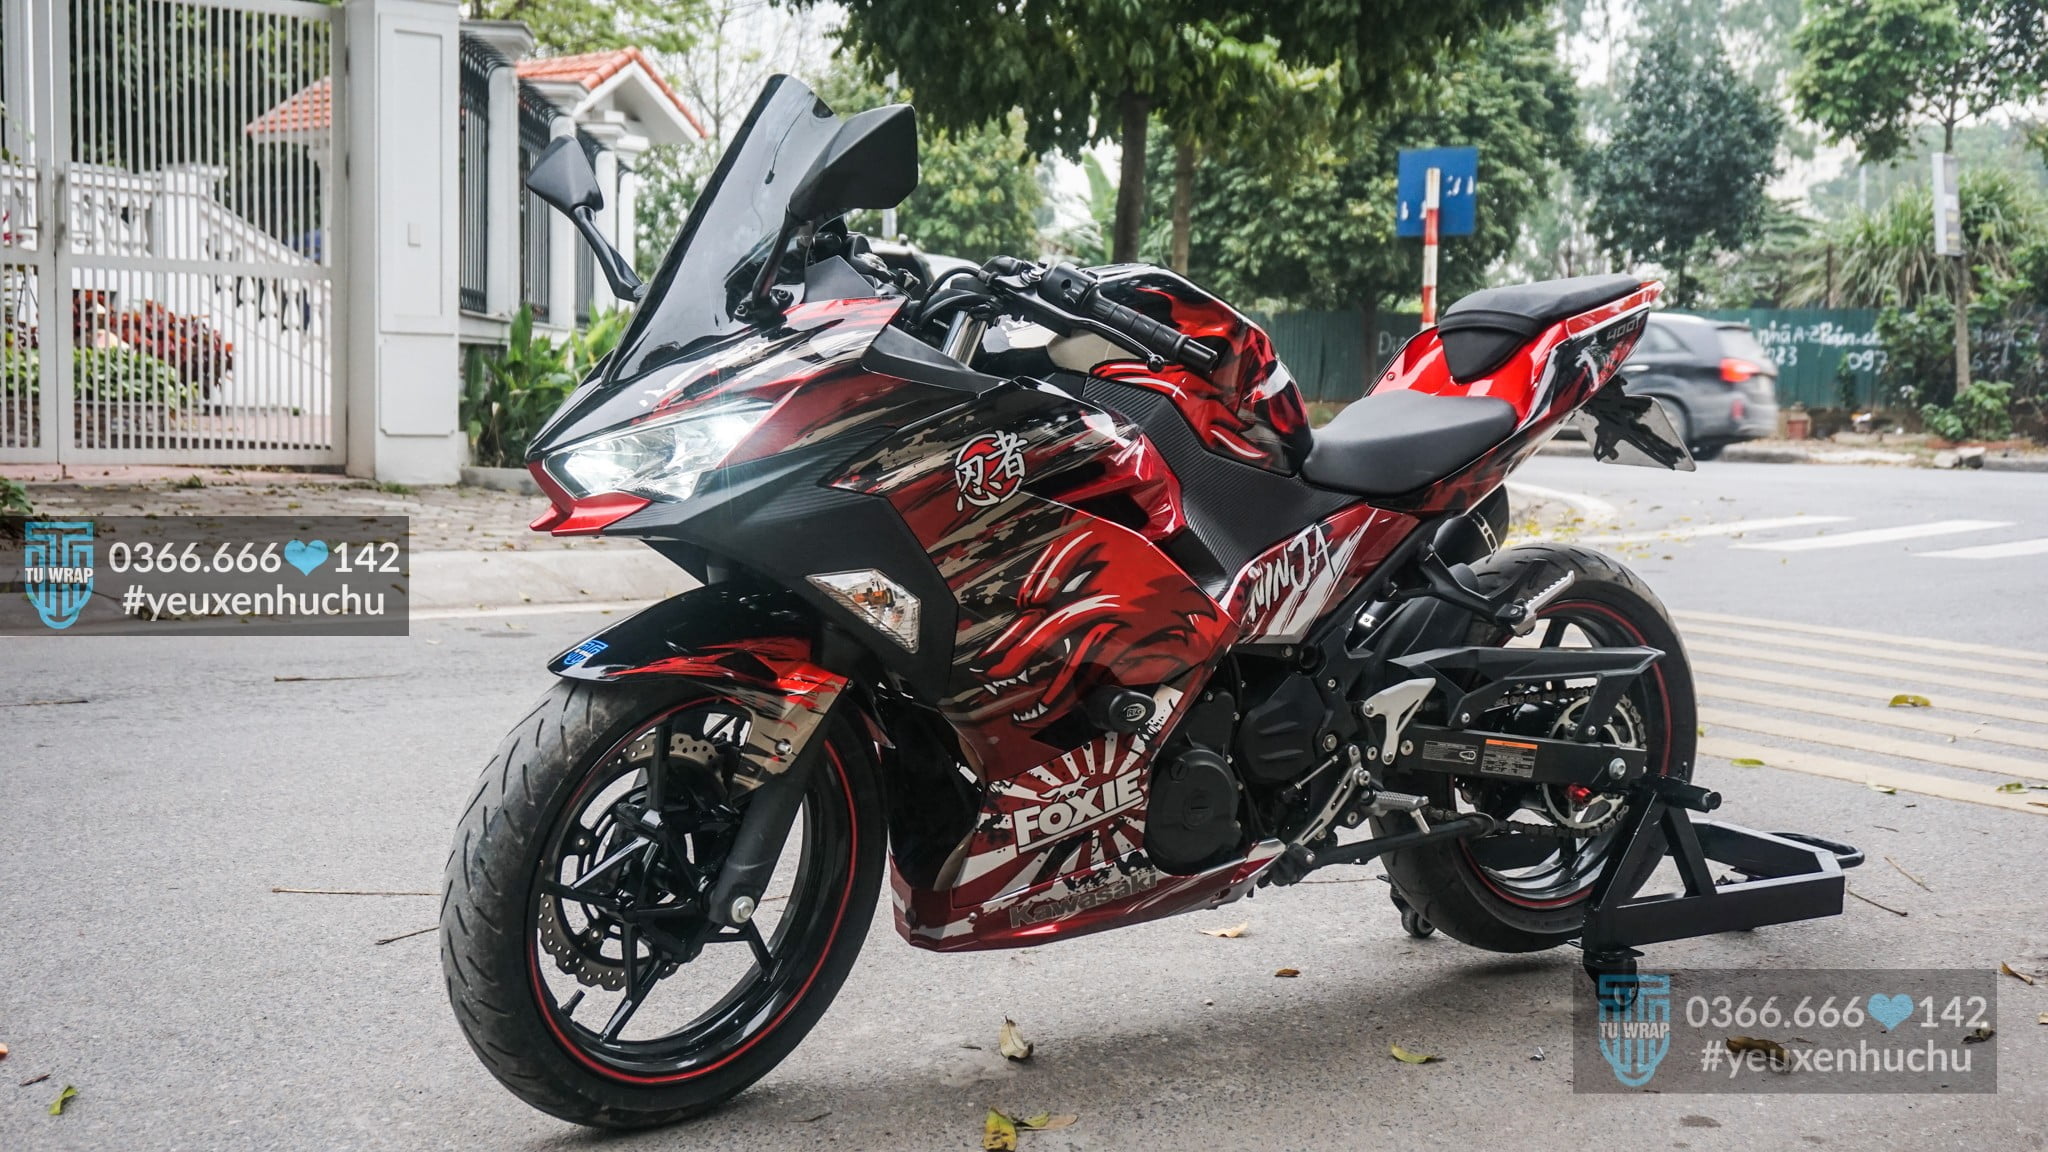 Kawasaki Ninja 400 siêu môtô động cơ mạnh mẽ